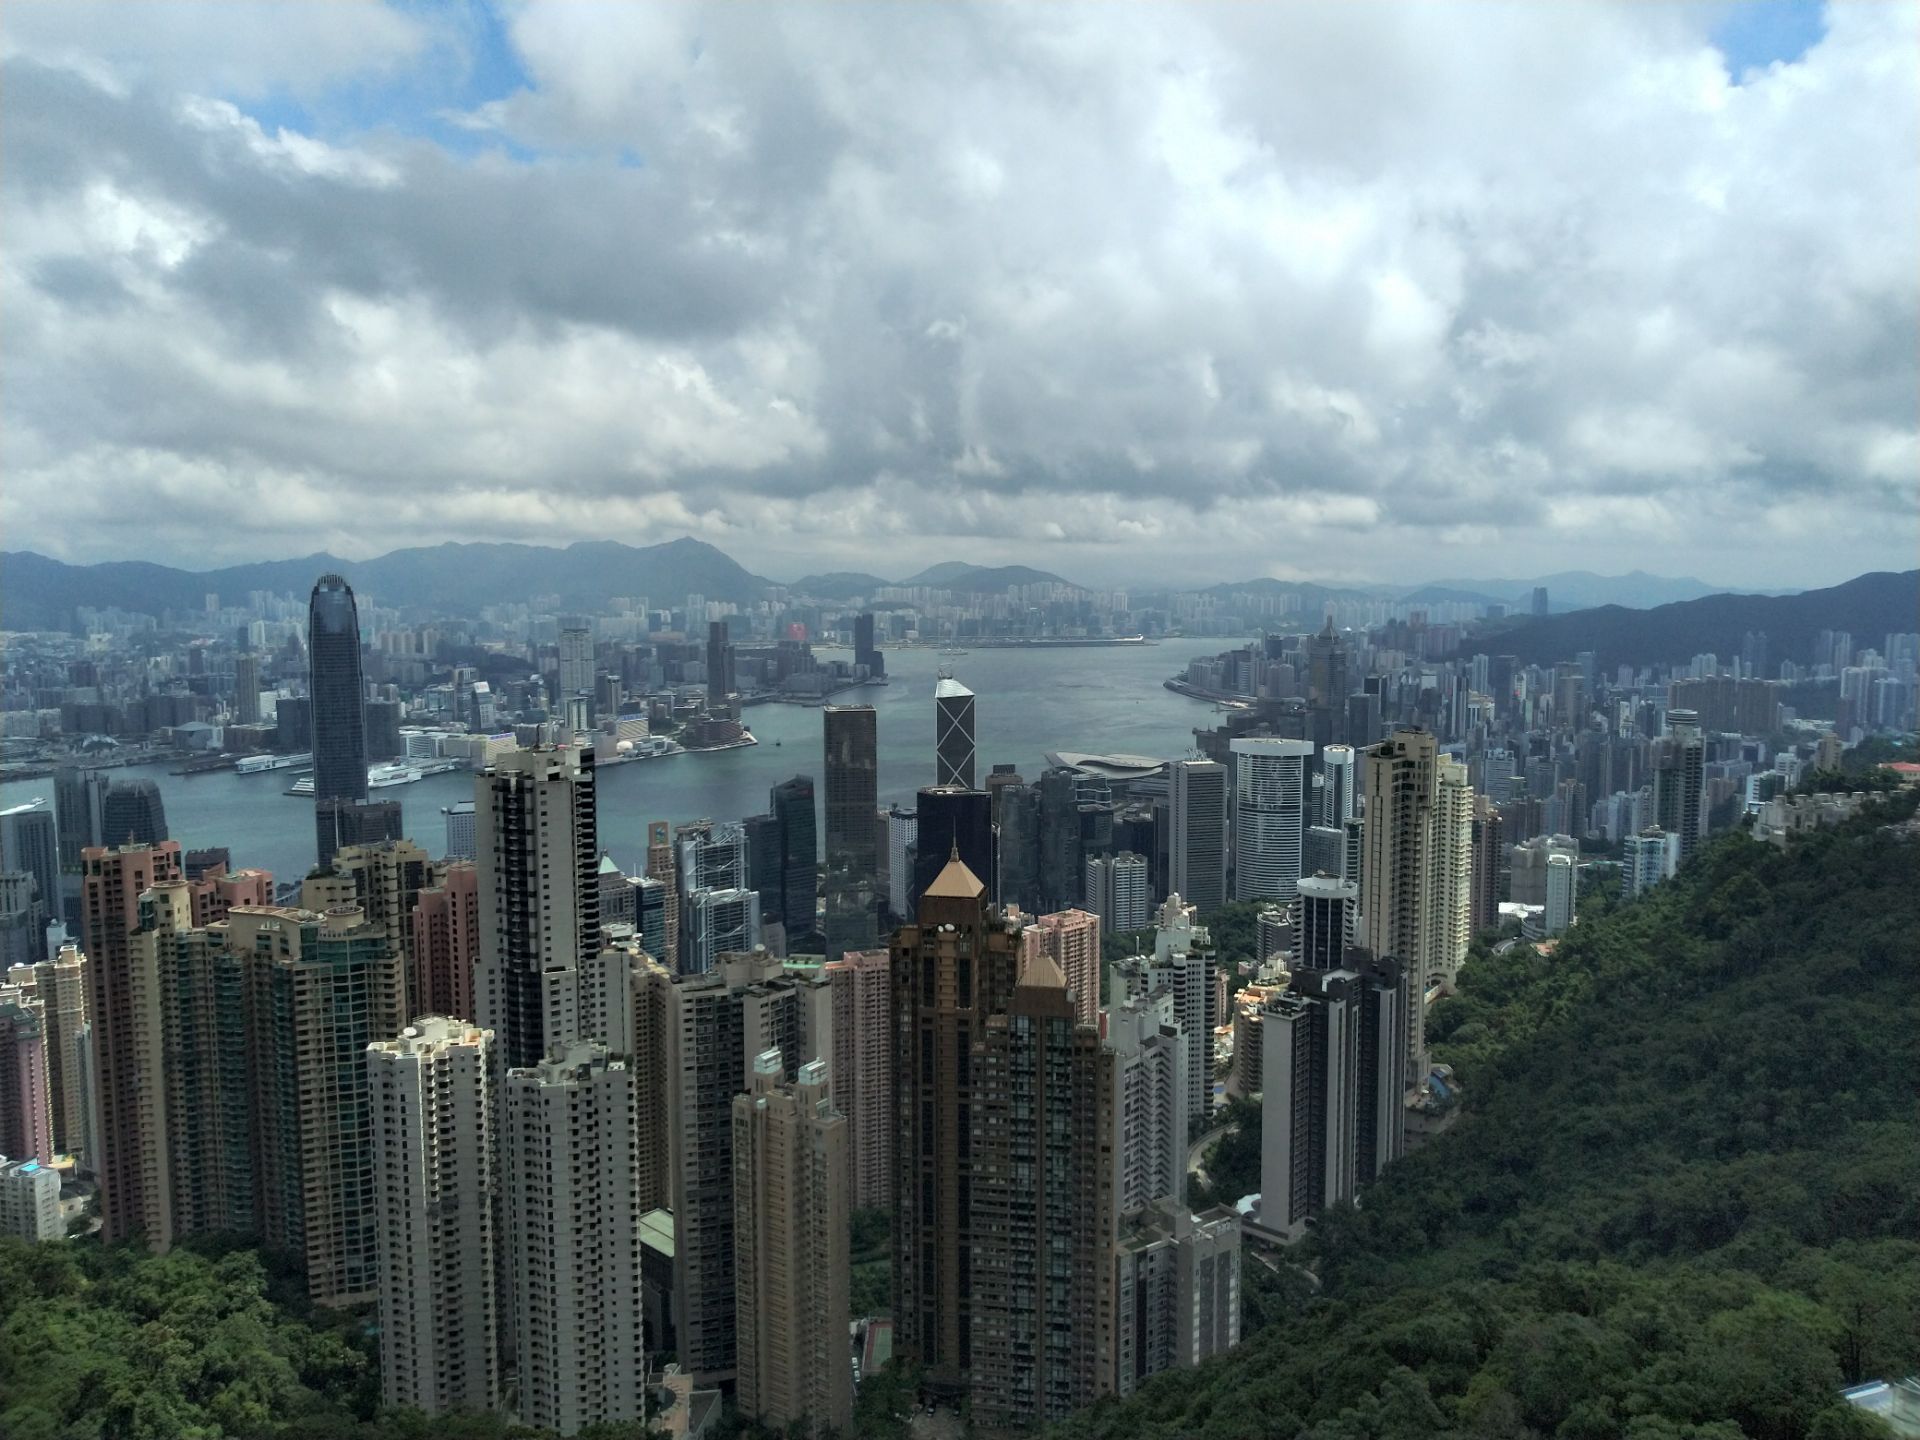 【携程攻略】香港凌霄阁景点,凌霄阁是太平山观看维多利亚港和香港